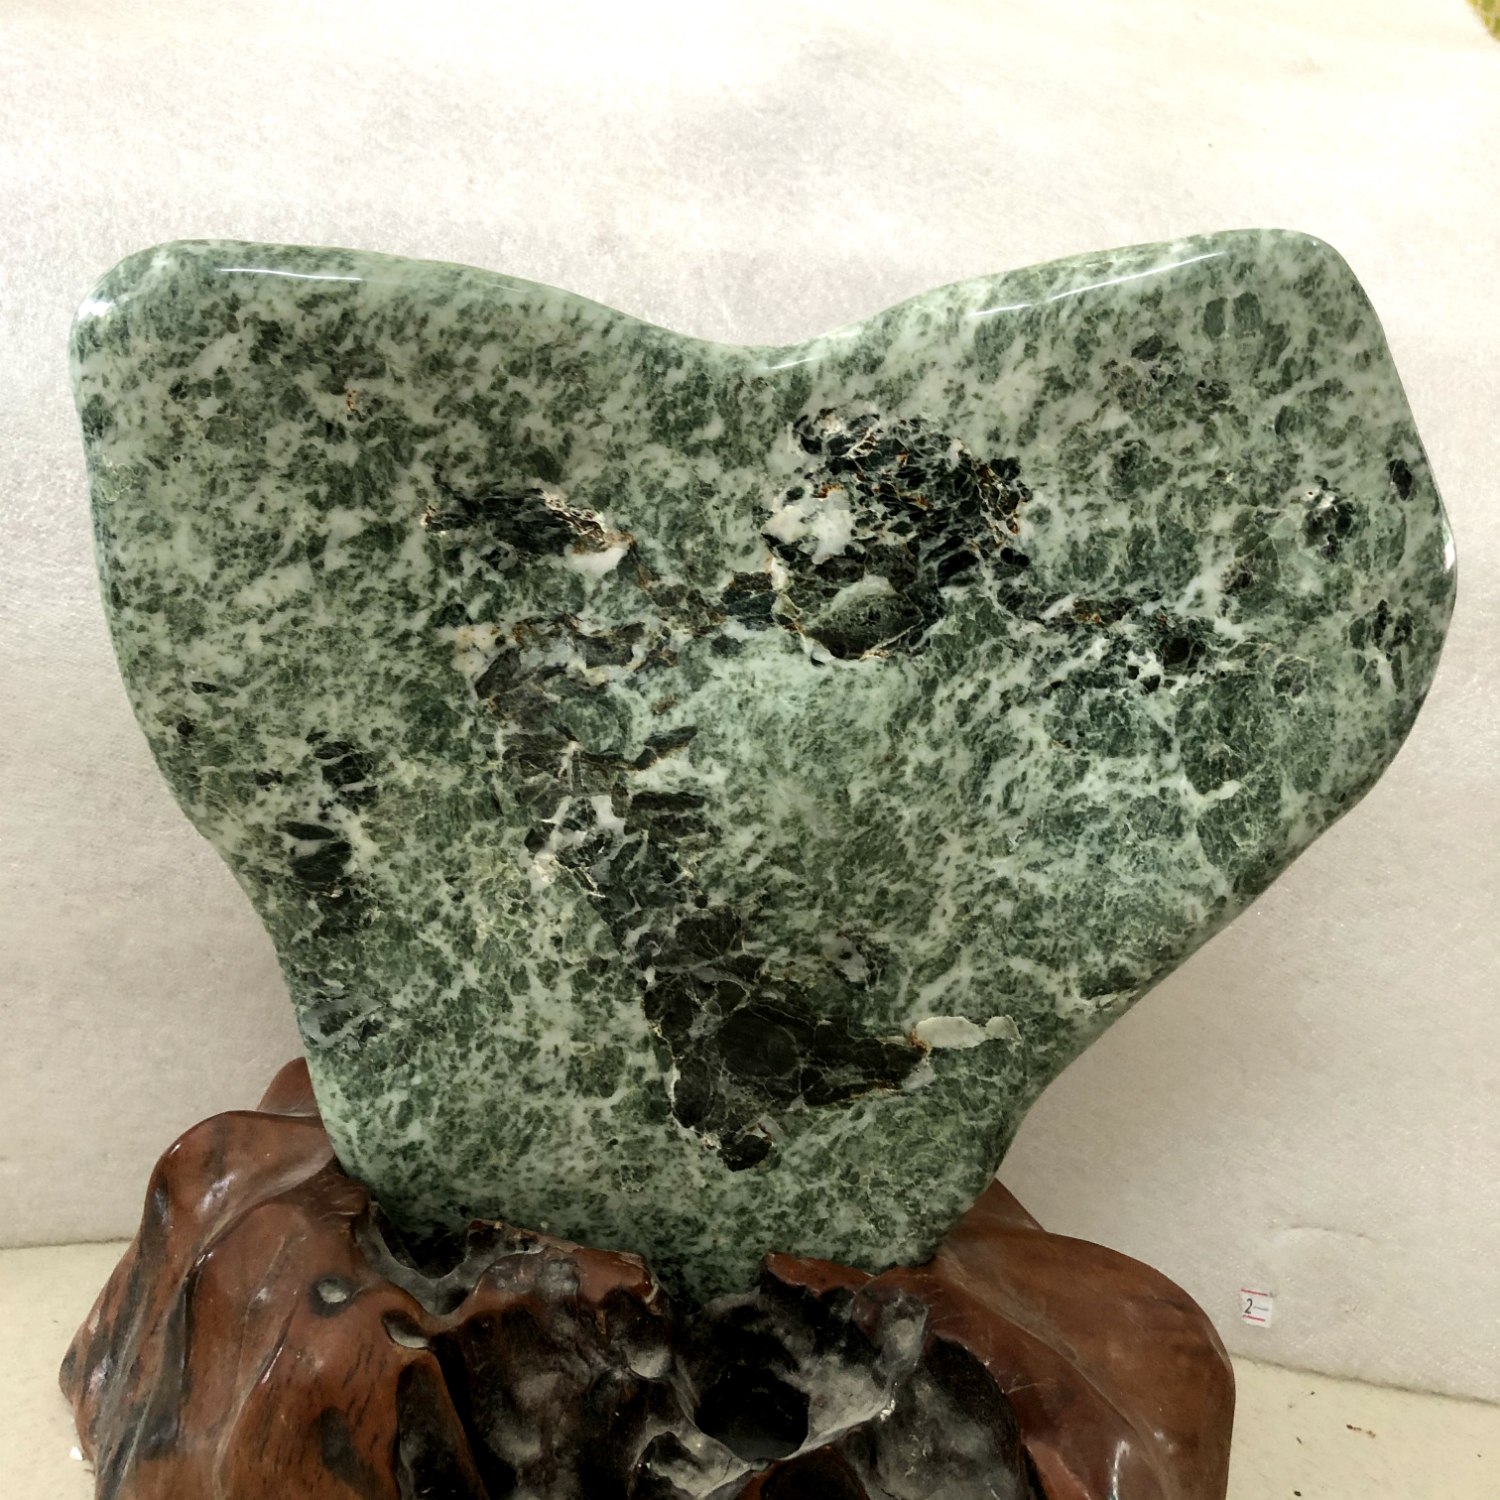 Cây đá tự nhiên serpentine màu xanh lá cho người mệnh Hỏa và Mộc nặng khoảng 9 kg gồm chân đế gỗ rừng hình trái tim da phong thuy my nghe